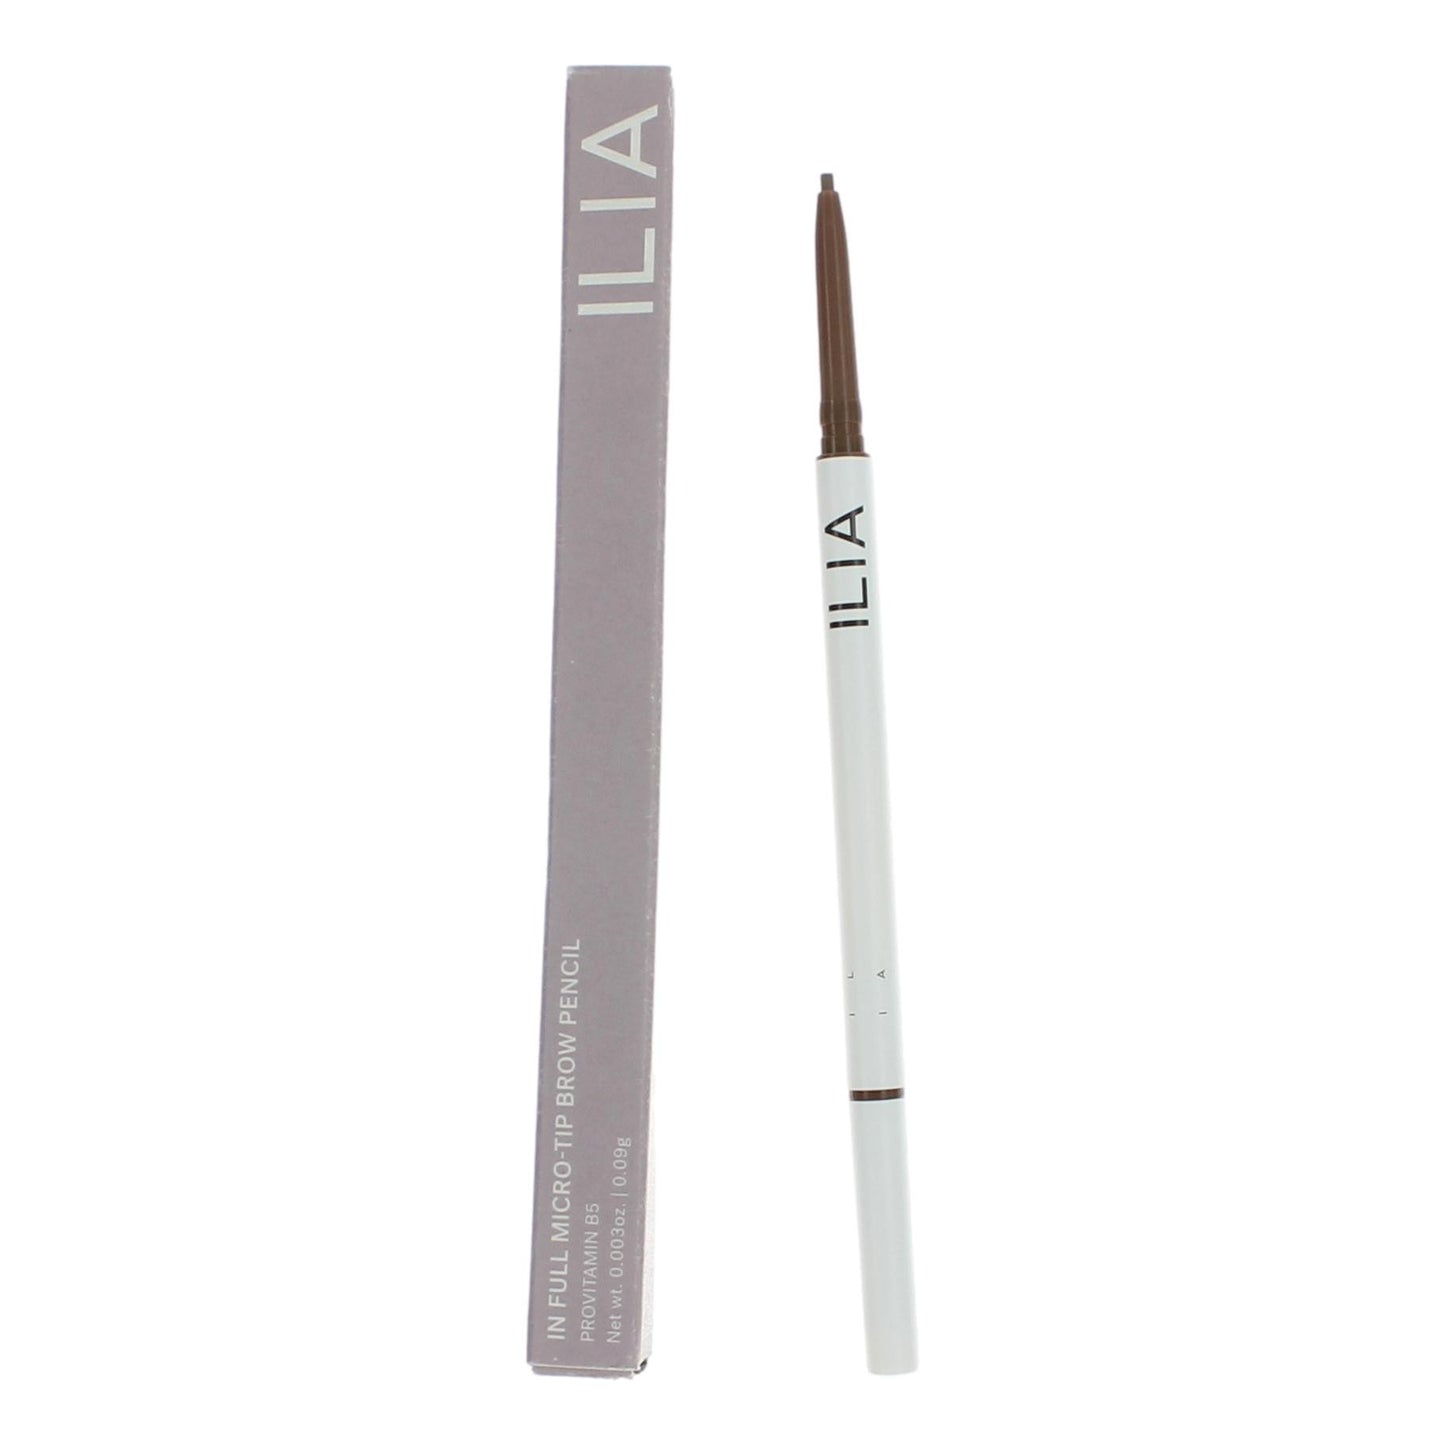 ILIA In Full Micro-Tip Brow Pencil by ILIA, .003oz Eyebrow Pencil - Dark Blonde - Dark Blonde